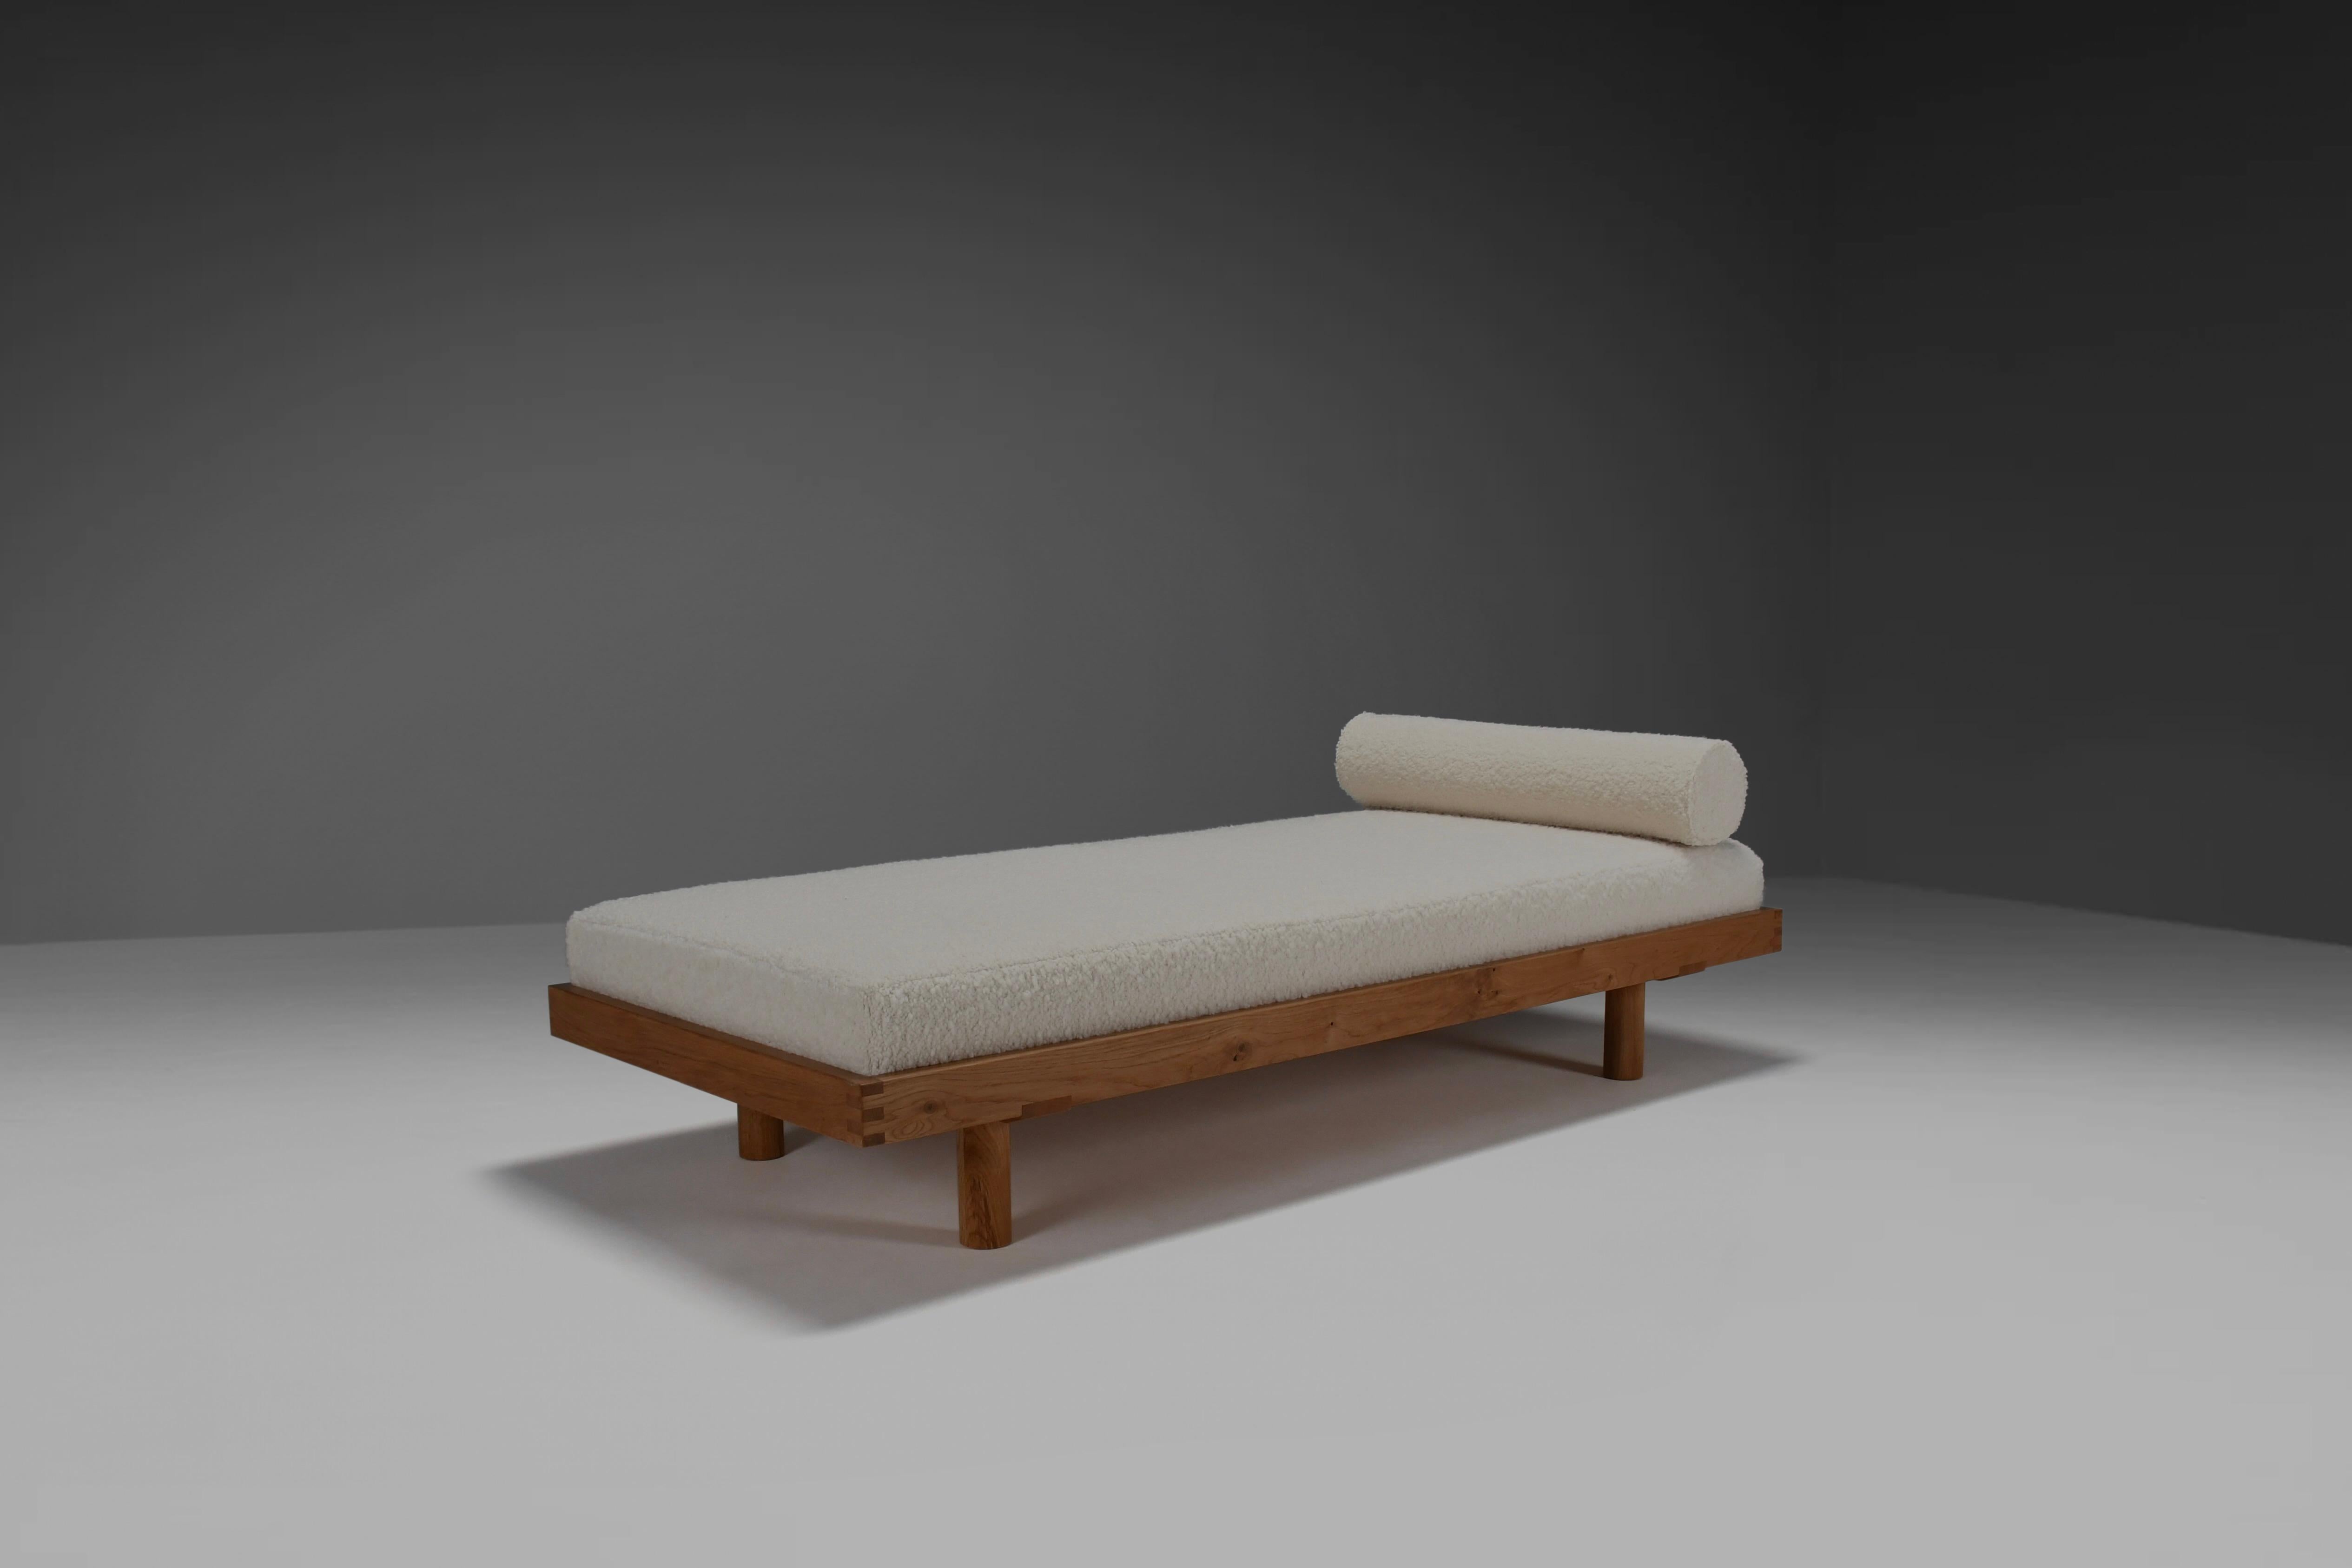 Cama de día L01 de Pierre Chapo en muy buen estado.

El sofá cama se caracteriza por su diseño sobrio y sus líneas sencillas. De madera de roble, con las características juntas de caja en las esquinas. Esta versión de madera de roble es bastante